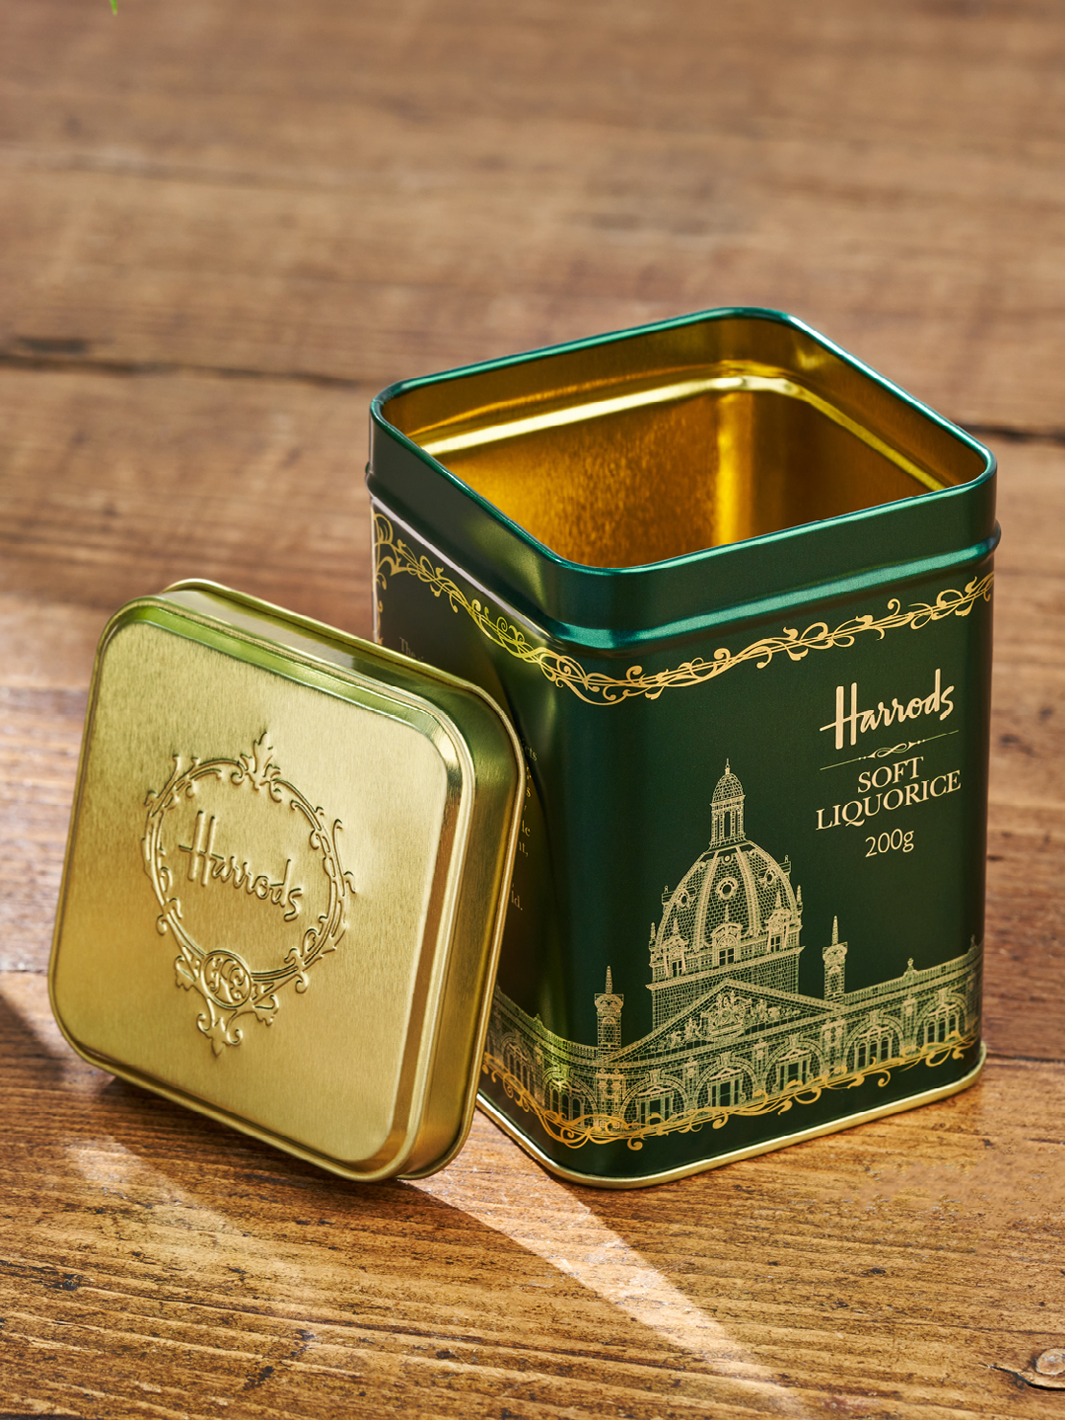 Eine grüne Harrods-Verpackungsdose für Süßigkeiten. In das grüne Design ist Gold eingraviert.